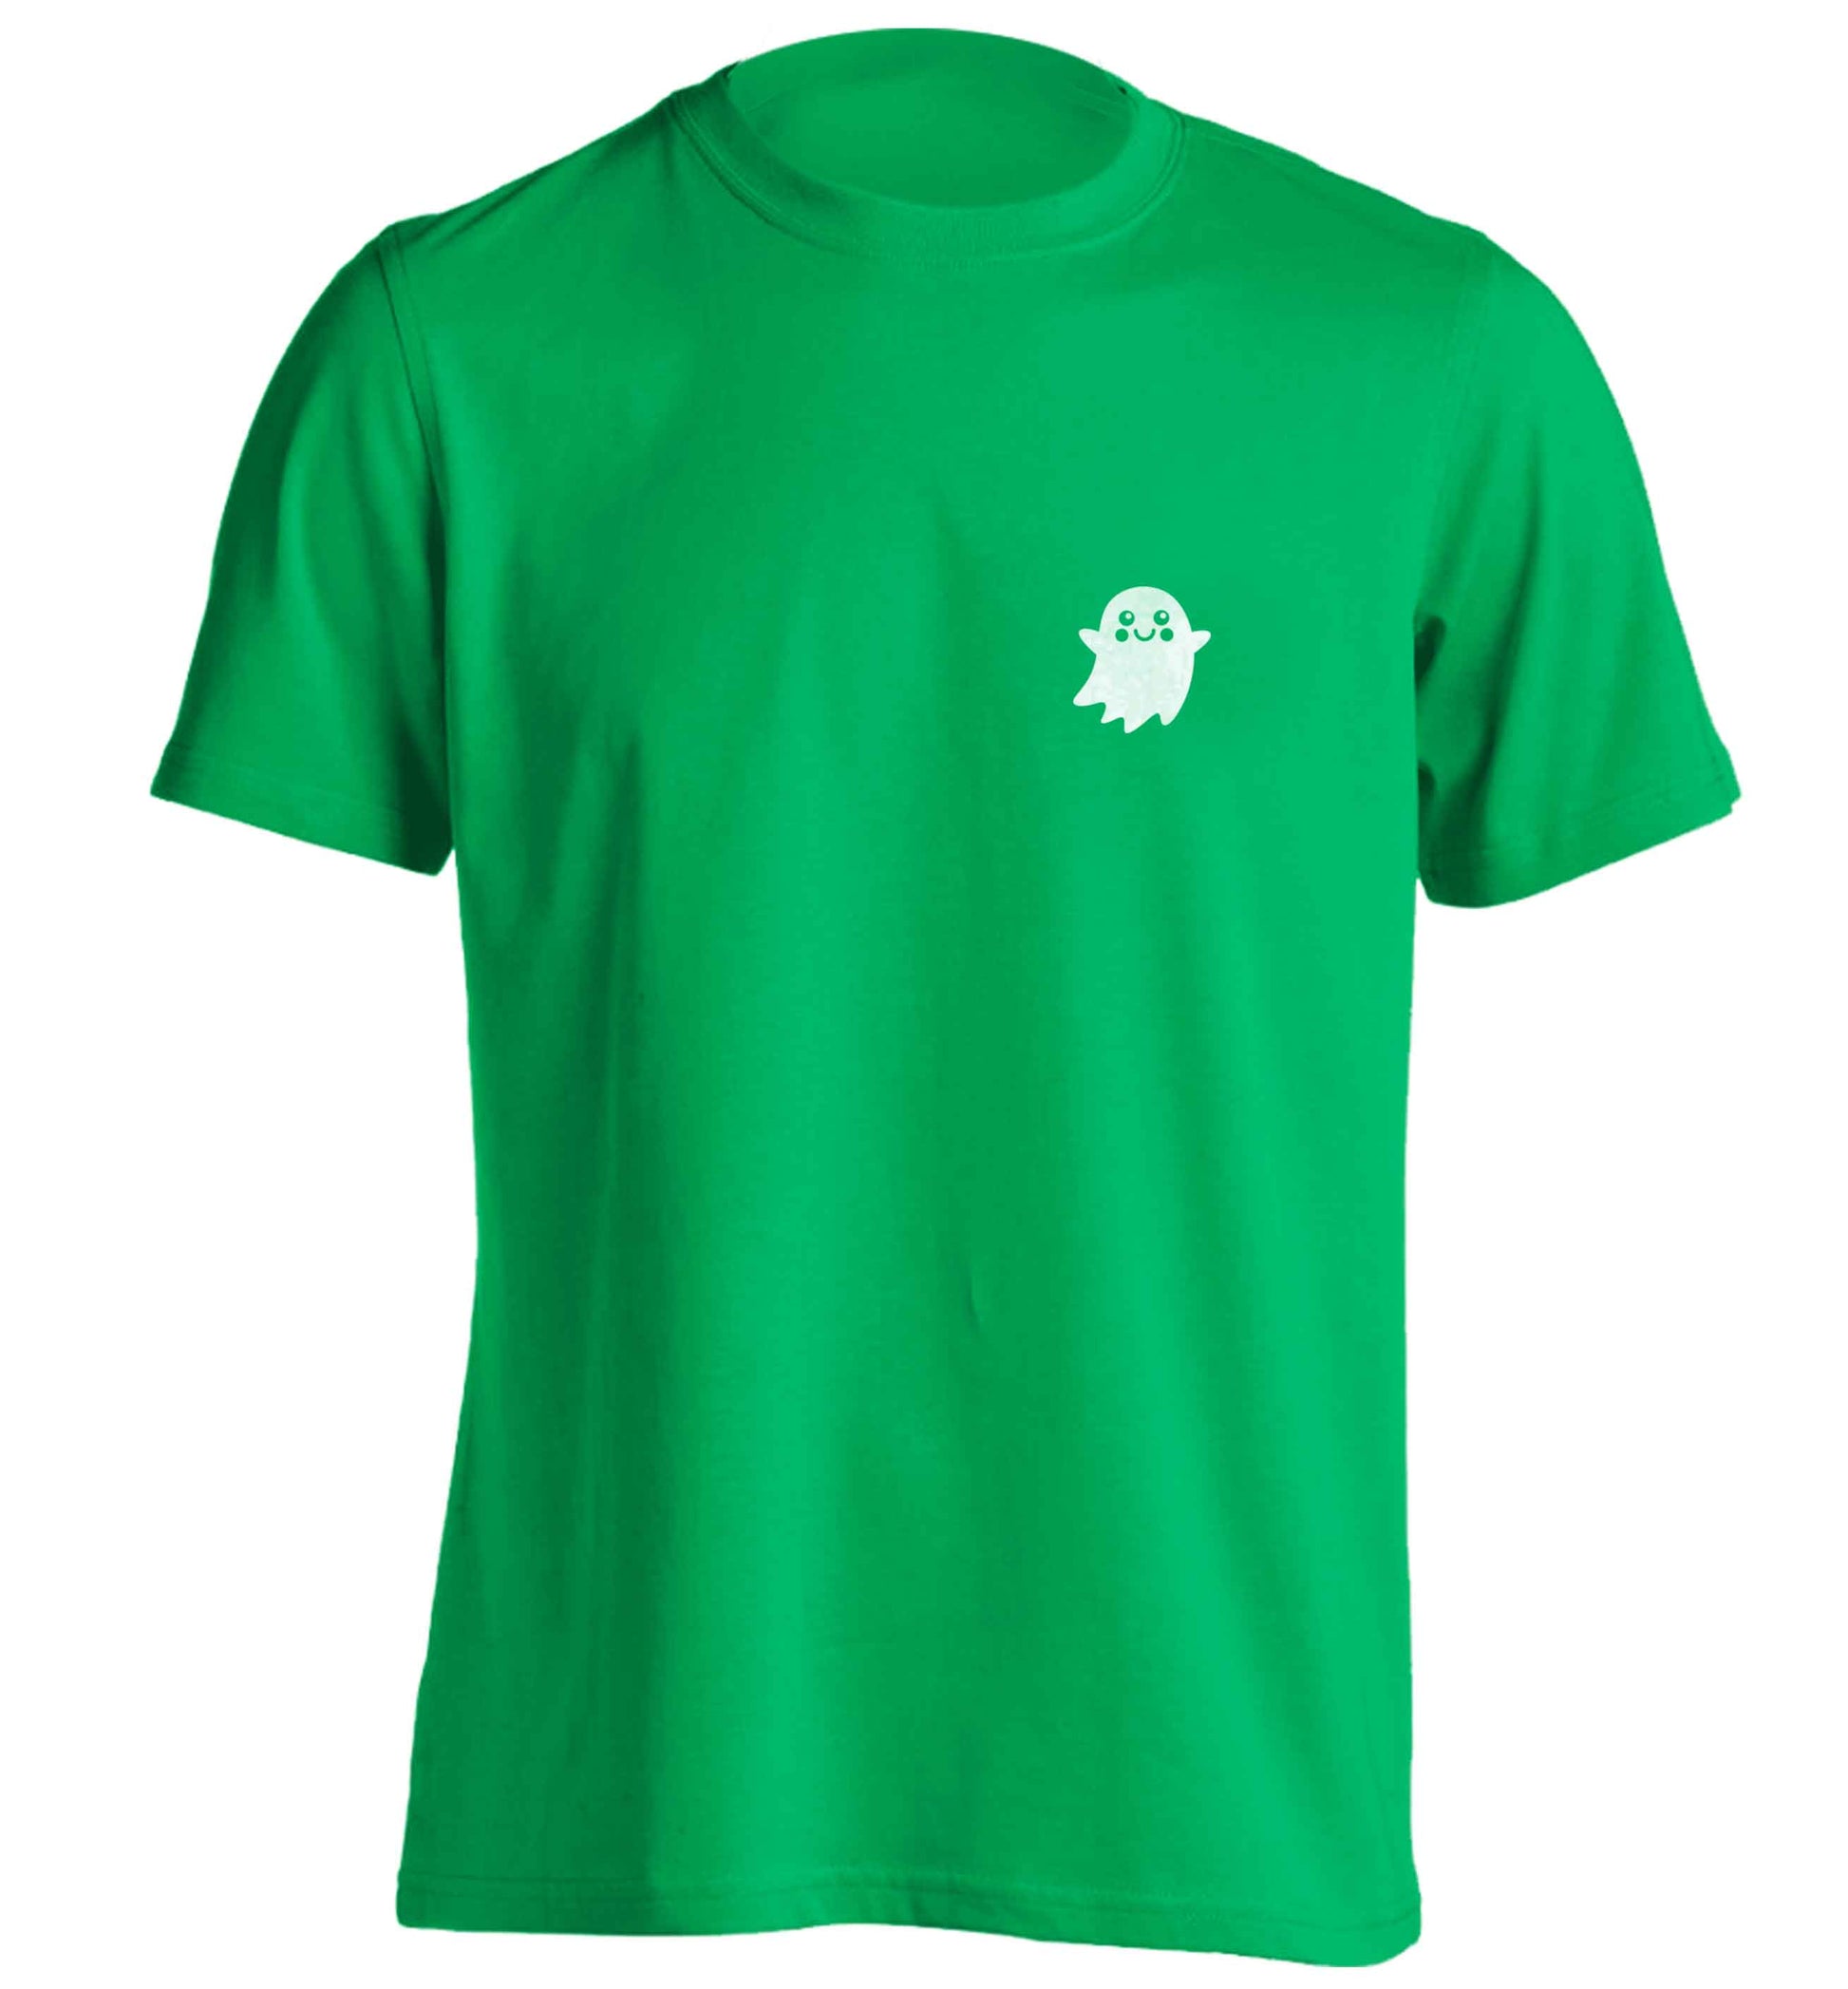 Pocket ghost adults unisex green Tshirt 2XL